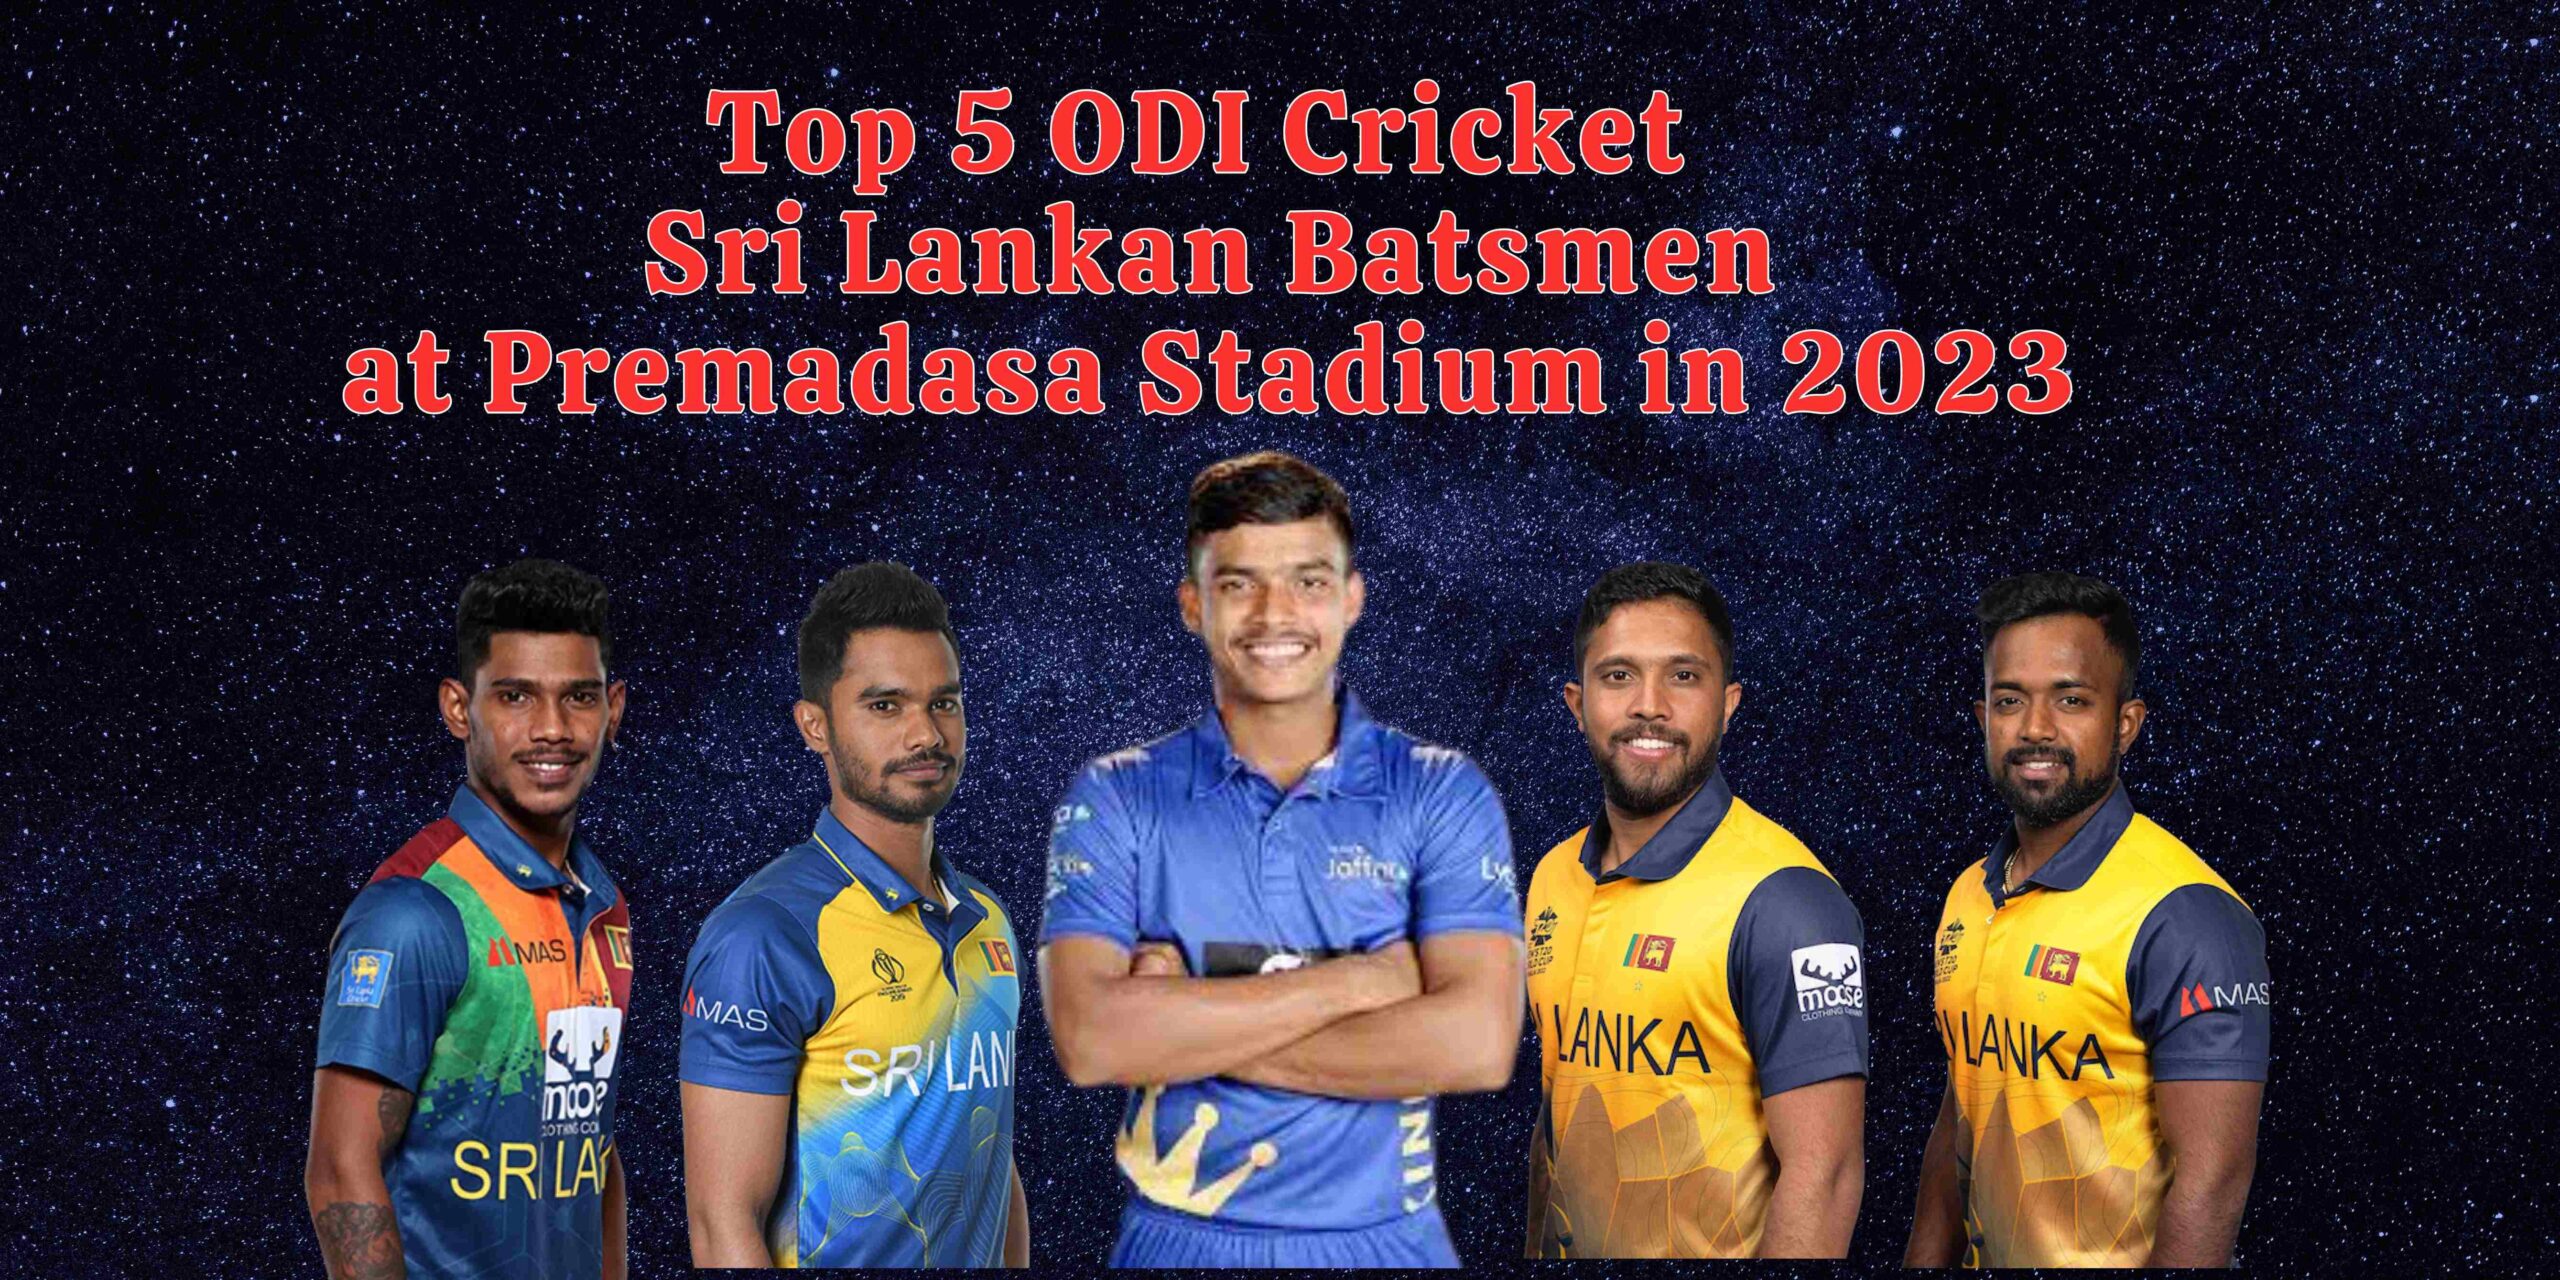 Top 5 ODI Cricket Sri Lankan Batsmen at Premadasa Stadium in 2023